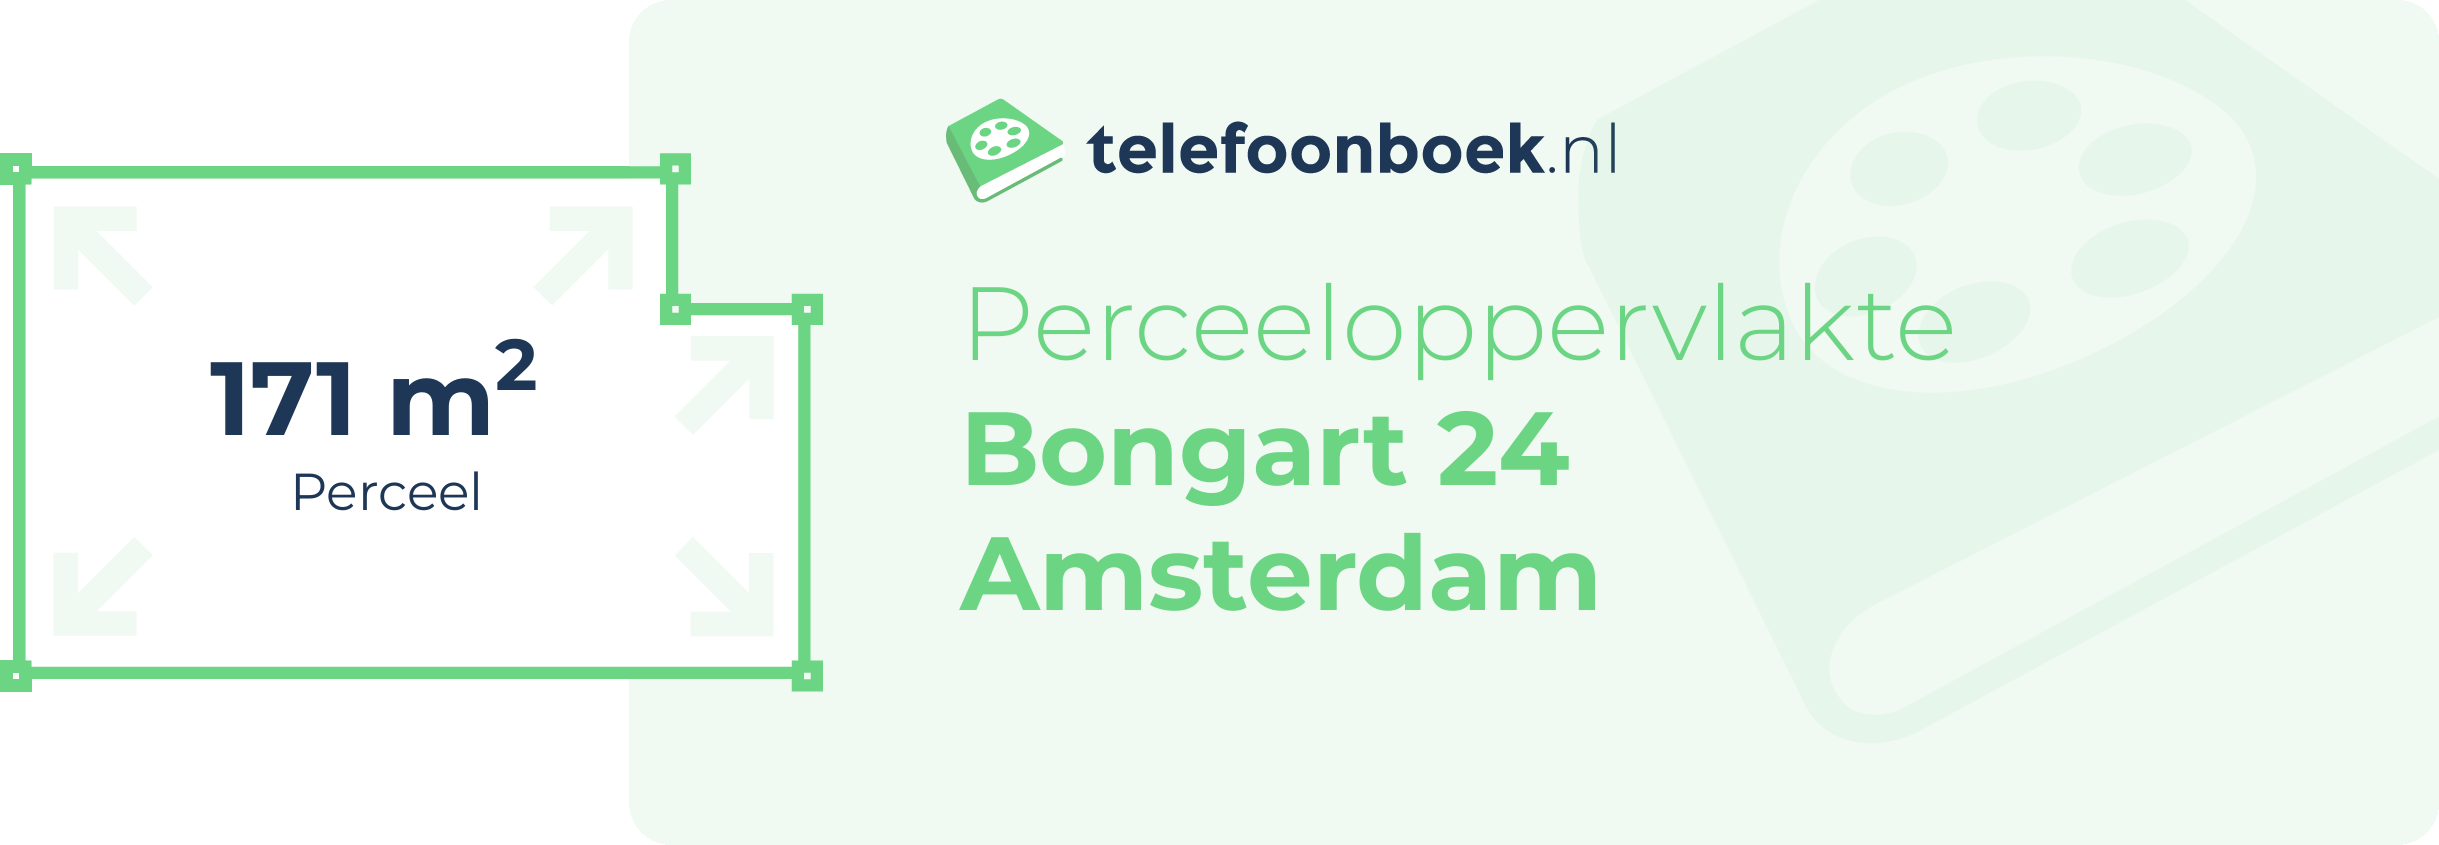 Perceeloppervlakte Bongart 24 Amsterdam